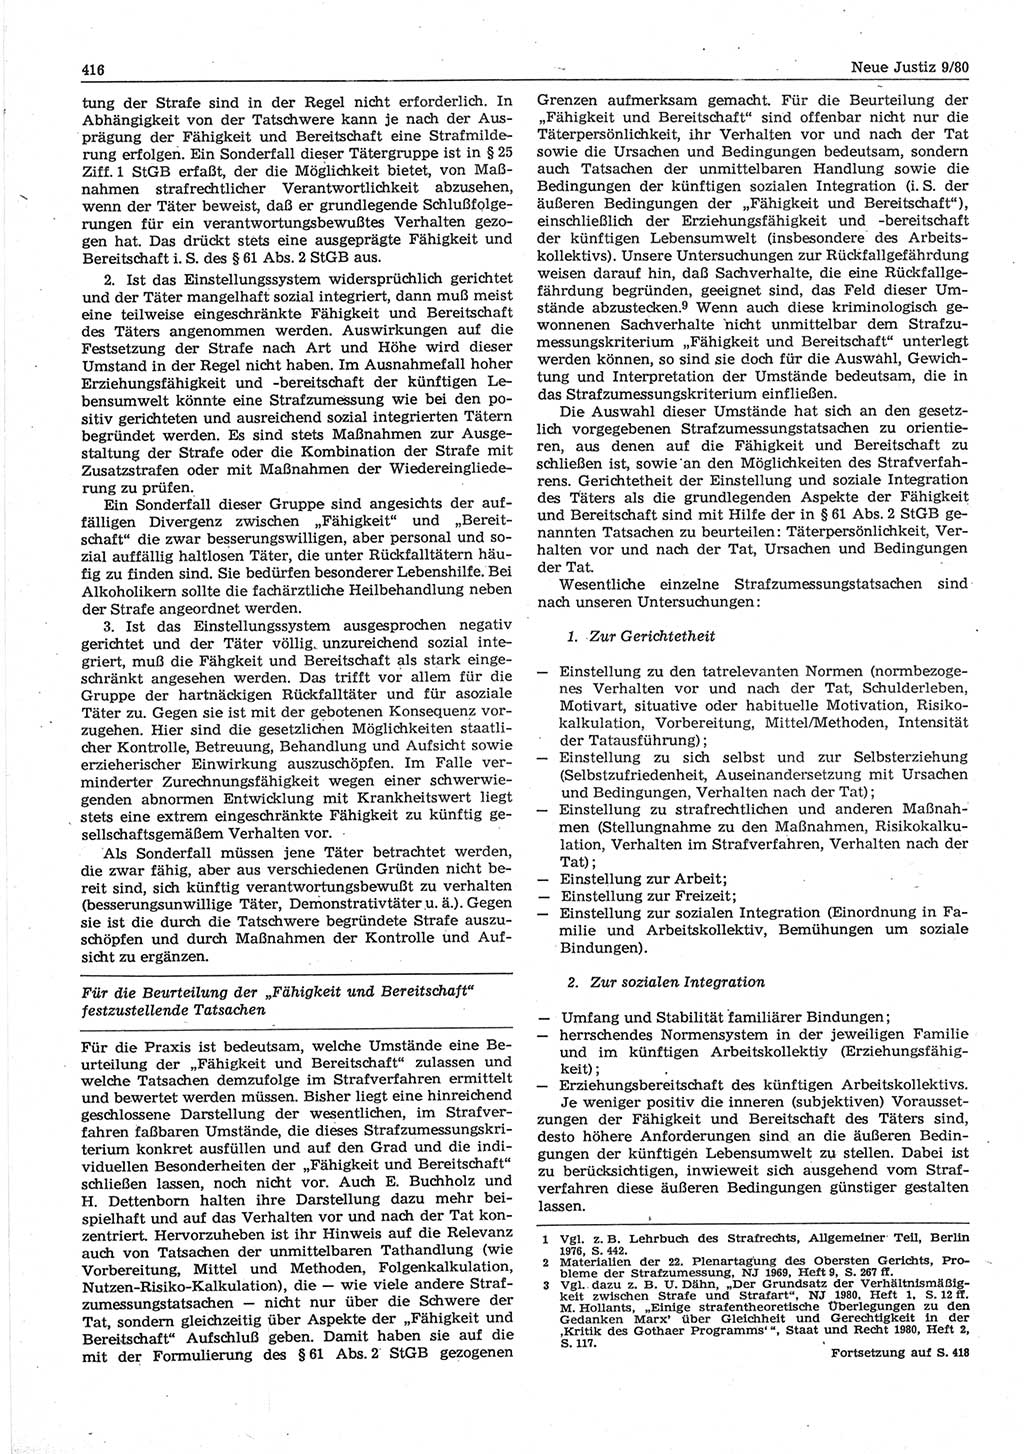 Neue Justiz (NJ), Zeitschrift für sozialistisches Recht und Gesetzlichkeit [Deutsche Demokratische Republik (DDR)], 34. Jahrgang 1980, Seite 416 (NJ DDR 1980, S. 416)